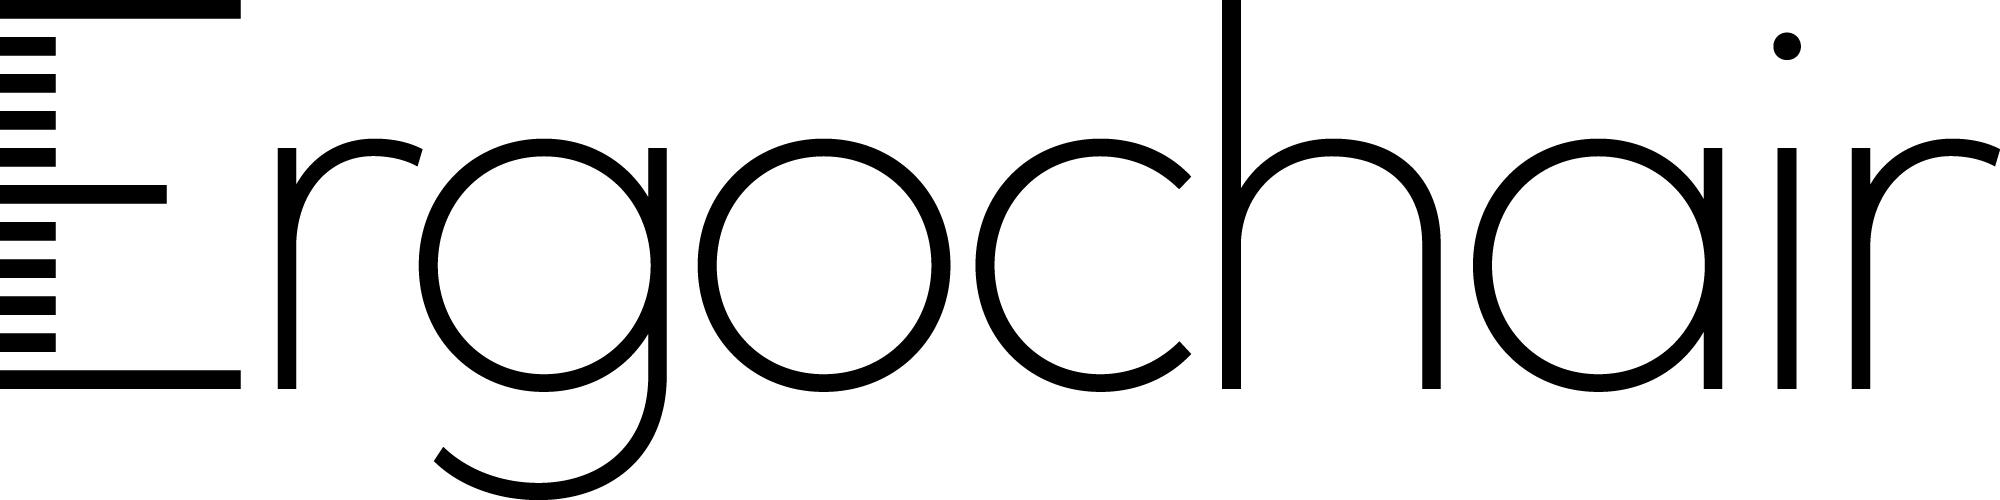 Ergochair logo